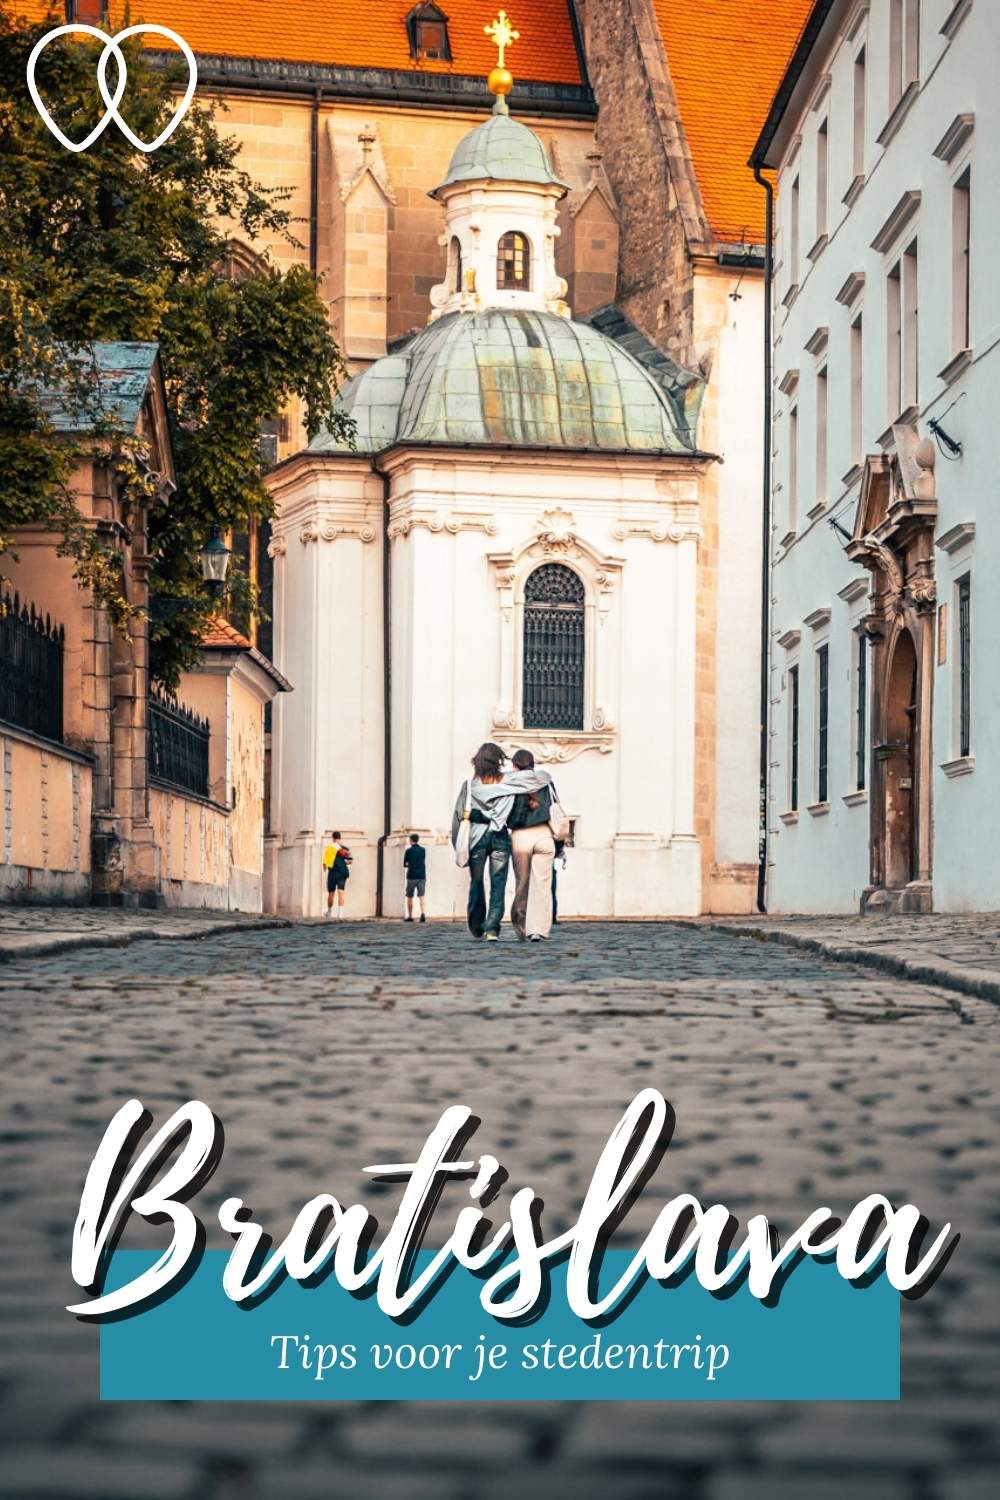 Stedentrip Bratislava: de leukste tips voor een stedentrip Bratislava | Mooistestedentrips.nl